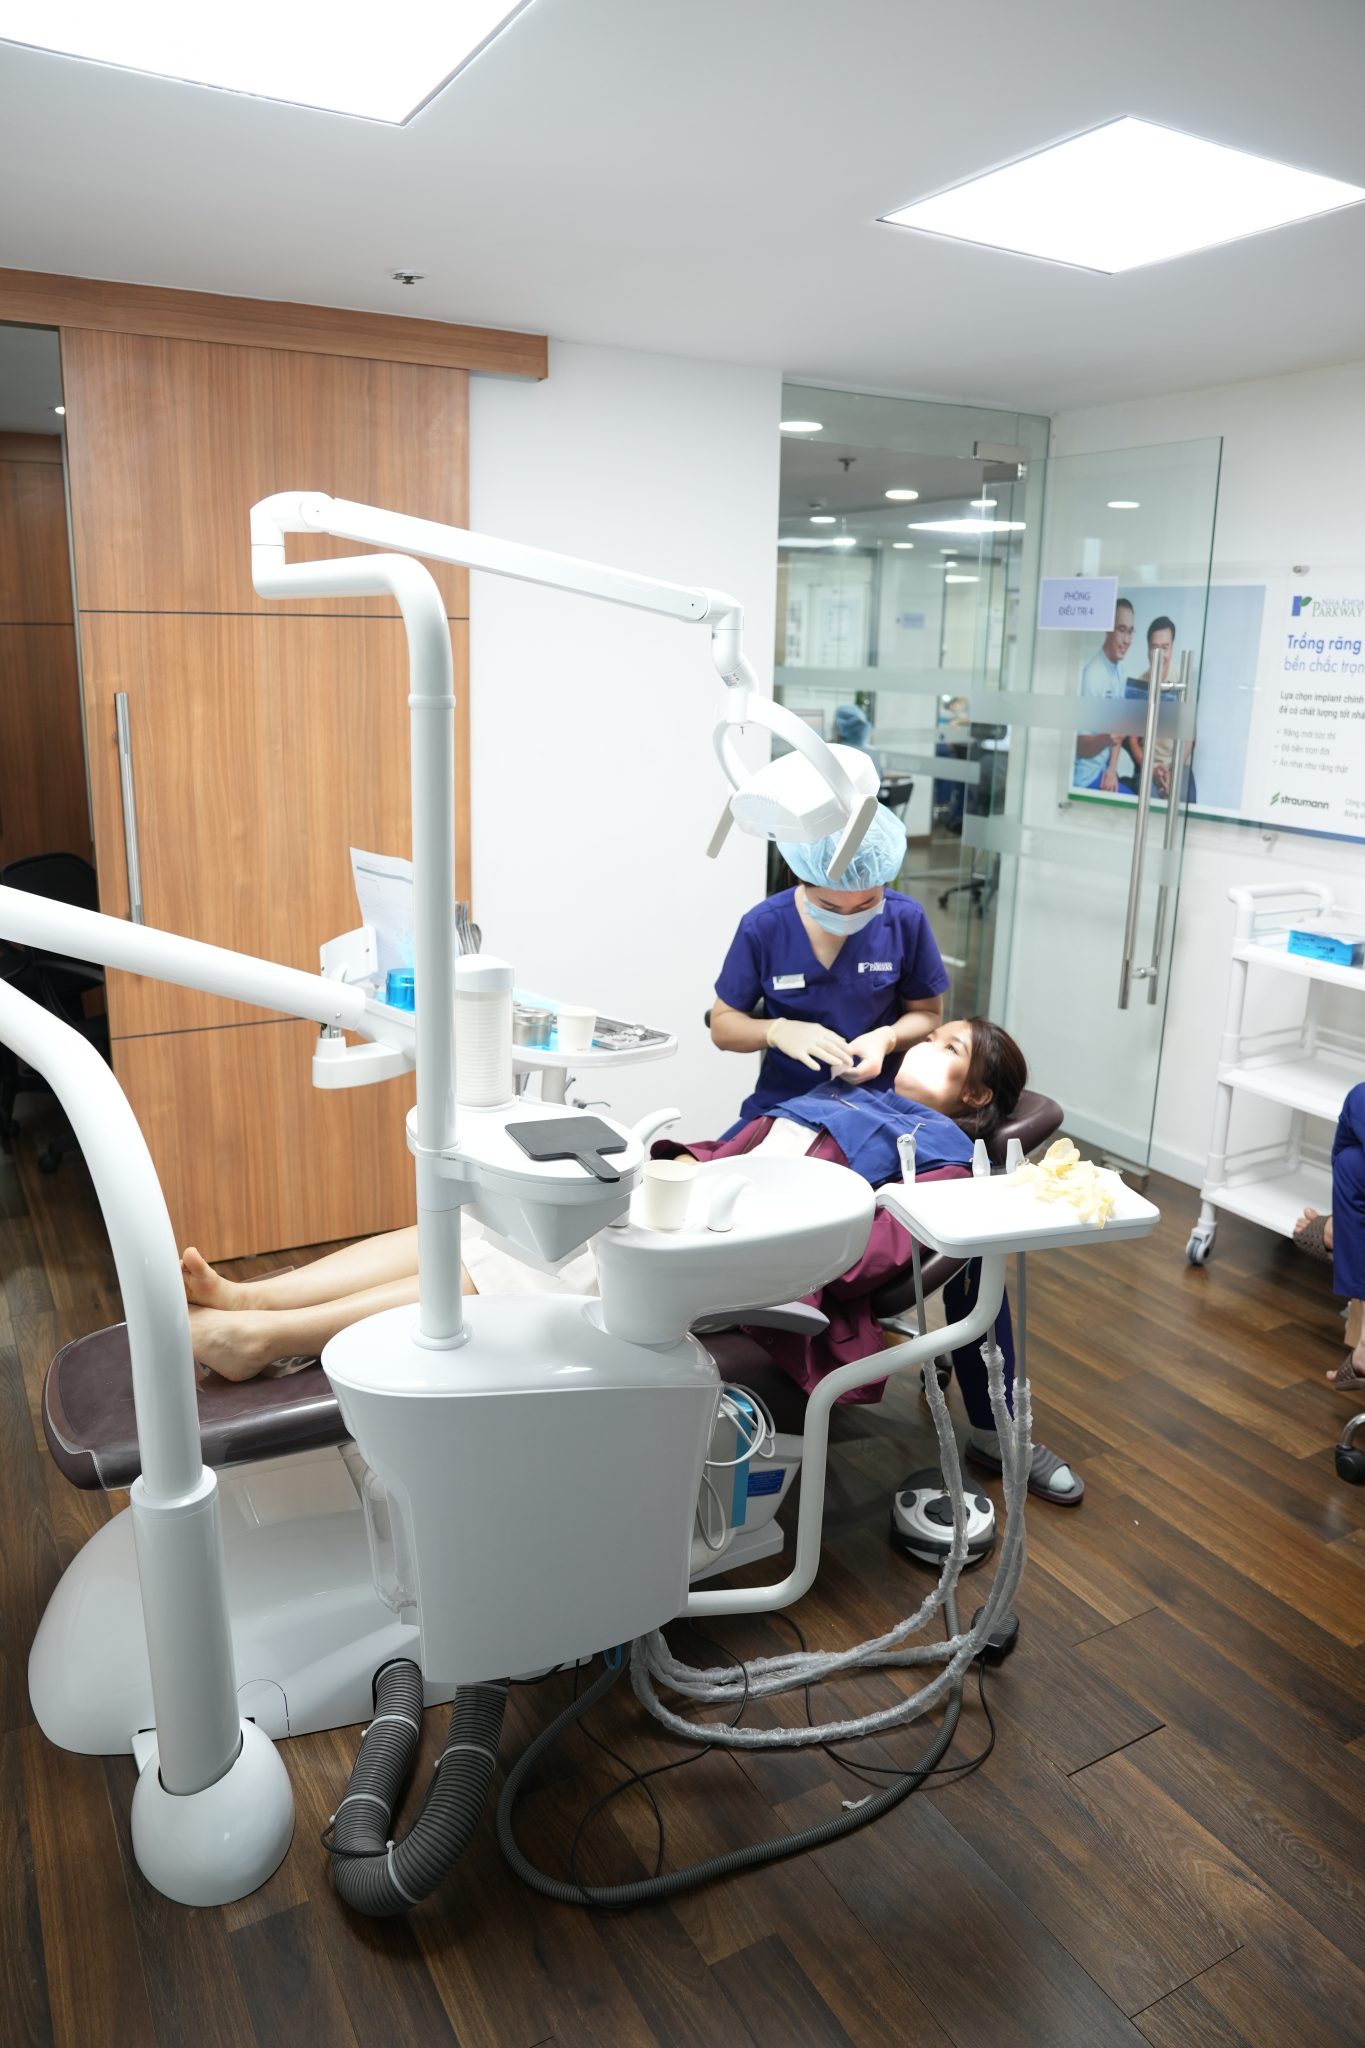 Thiết bị hiện đại và đội ngũ Bác sĩ có chuyên môn mang lại hiệu quả cao khi bạn niềng răng tại Nha khoa Parkway